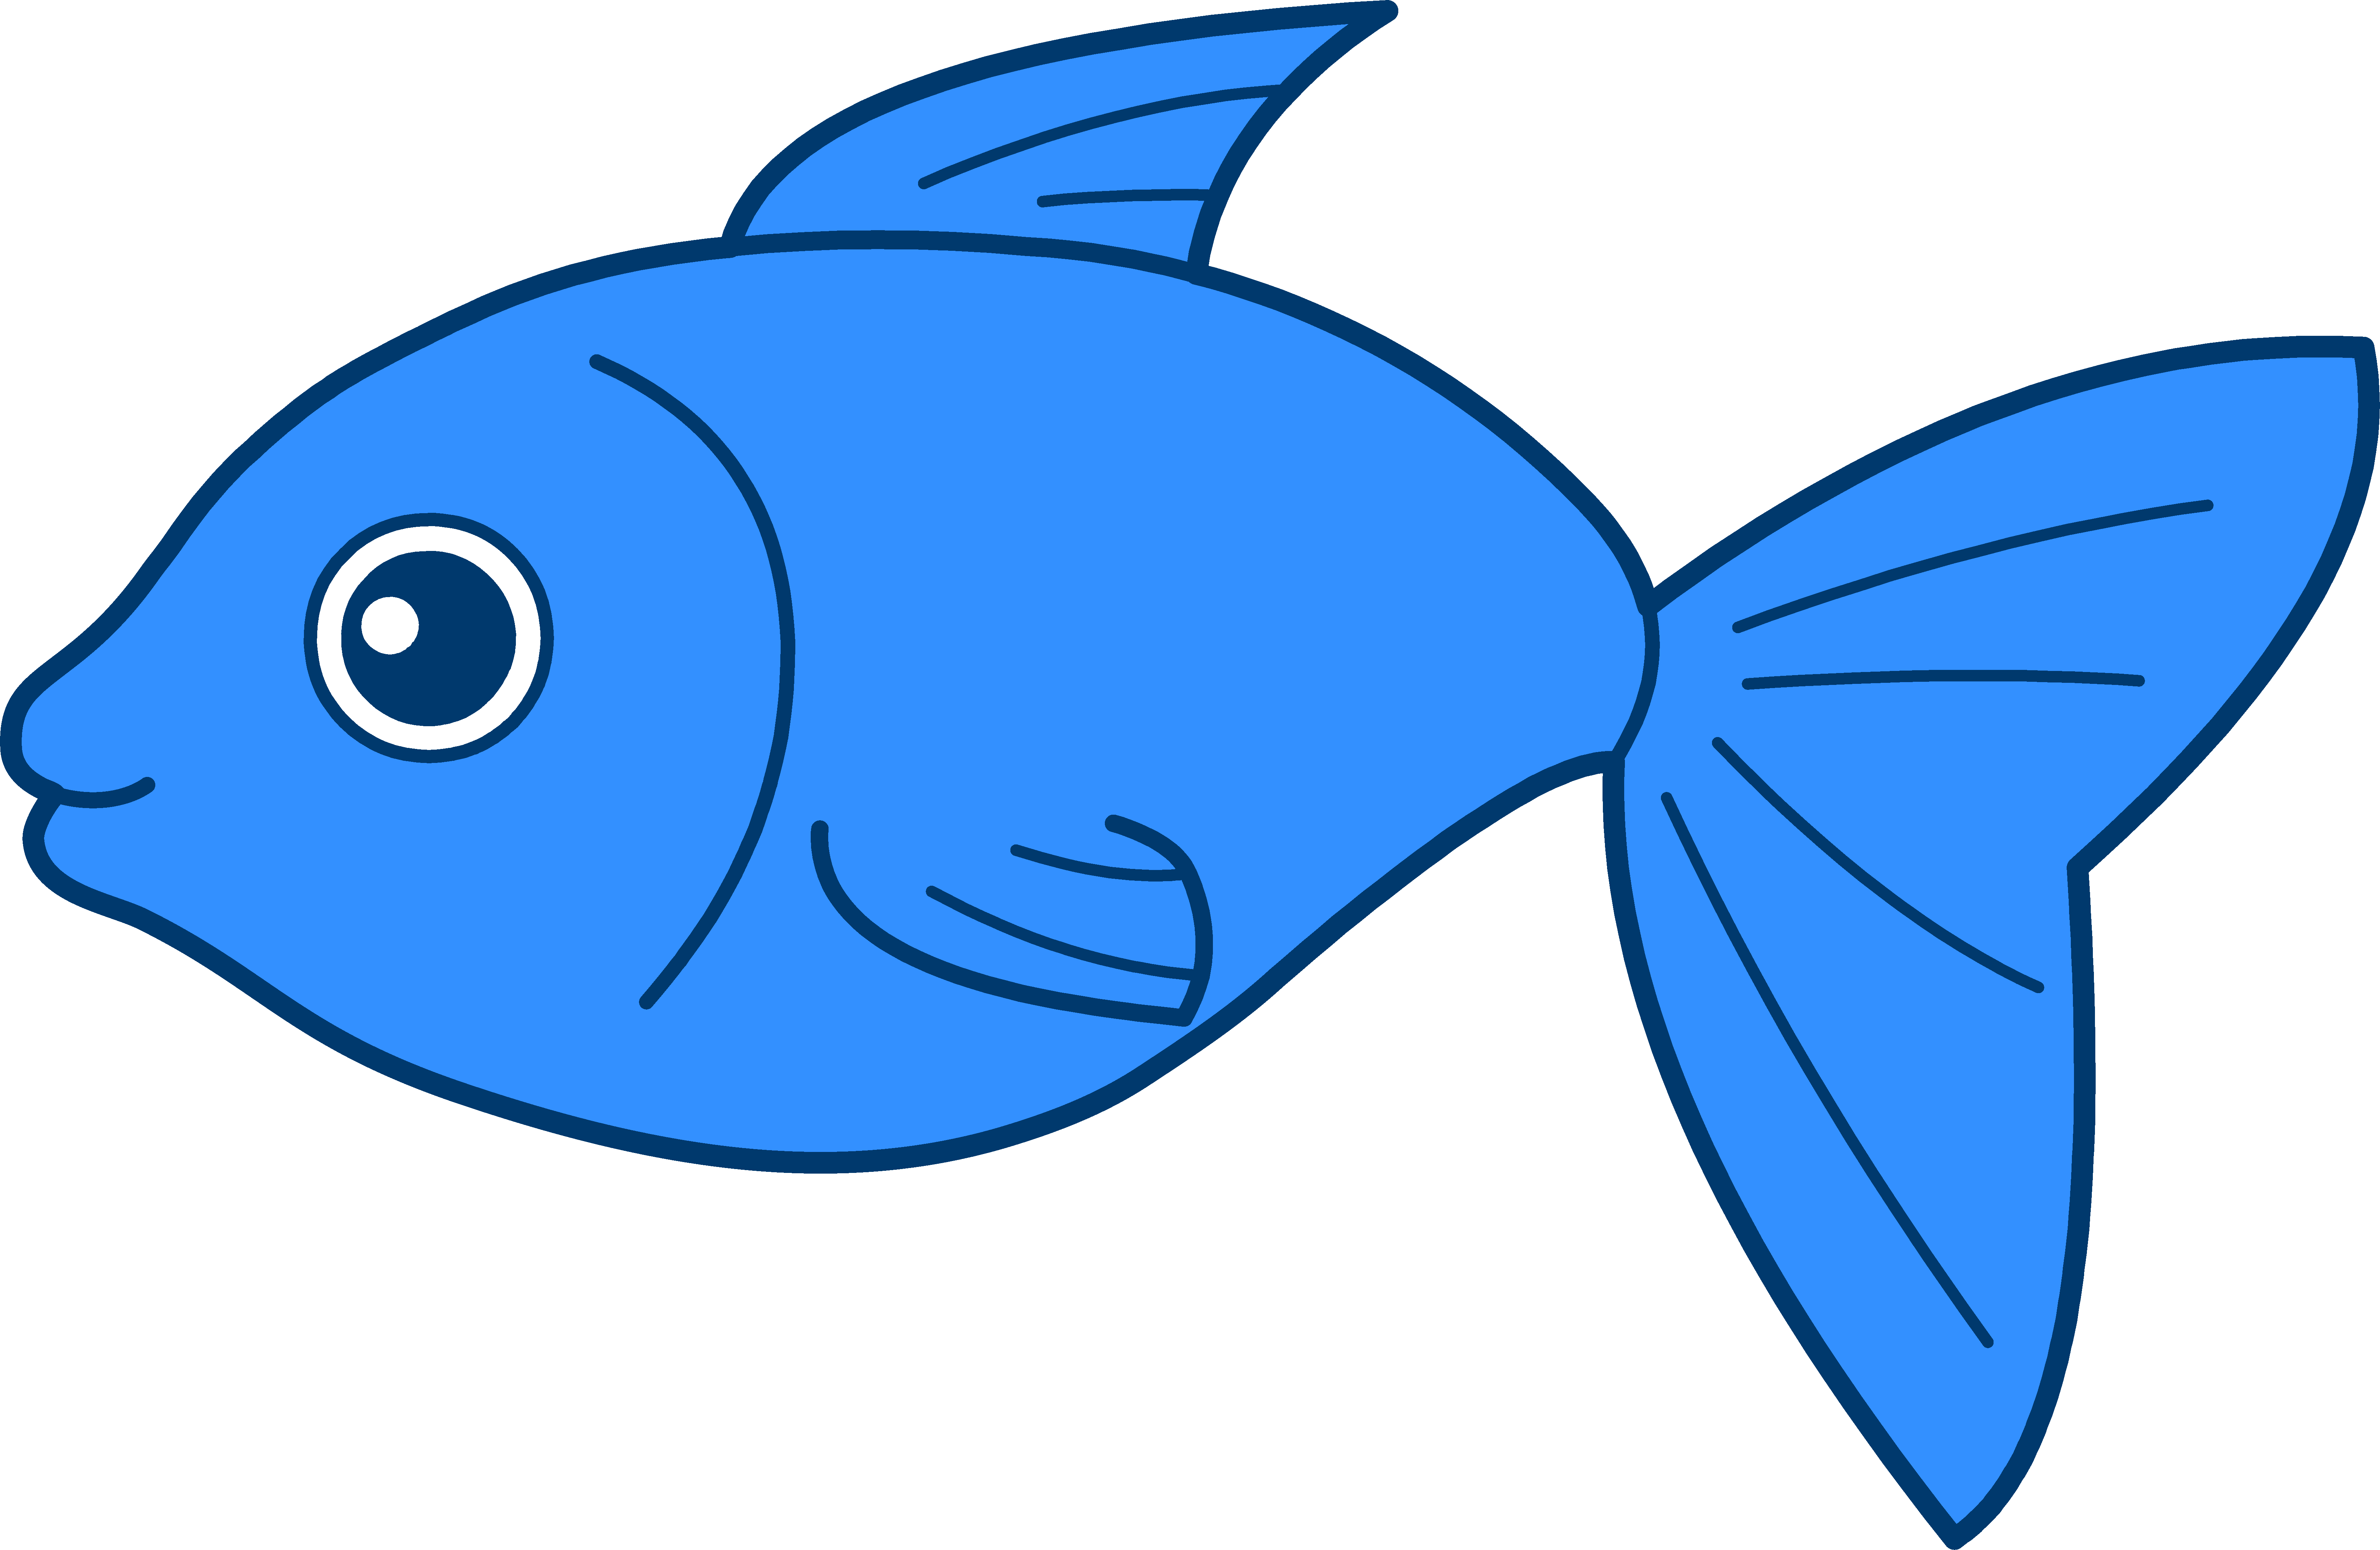 7 Fish Graphic Design Images